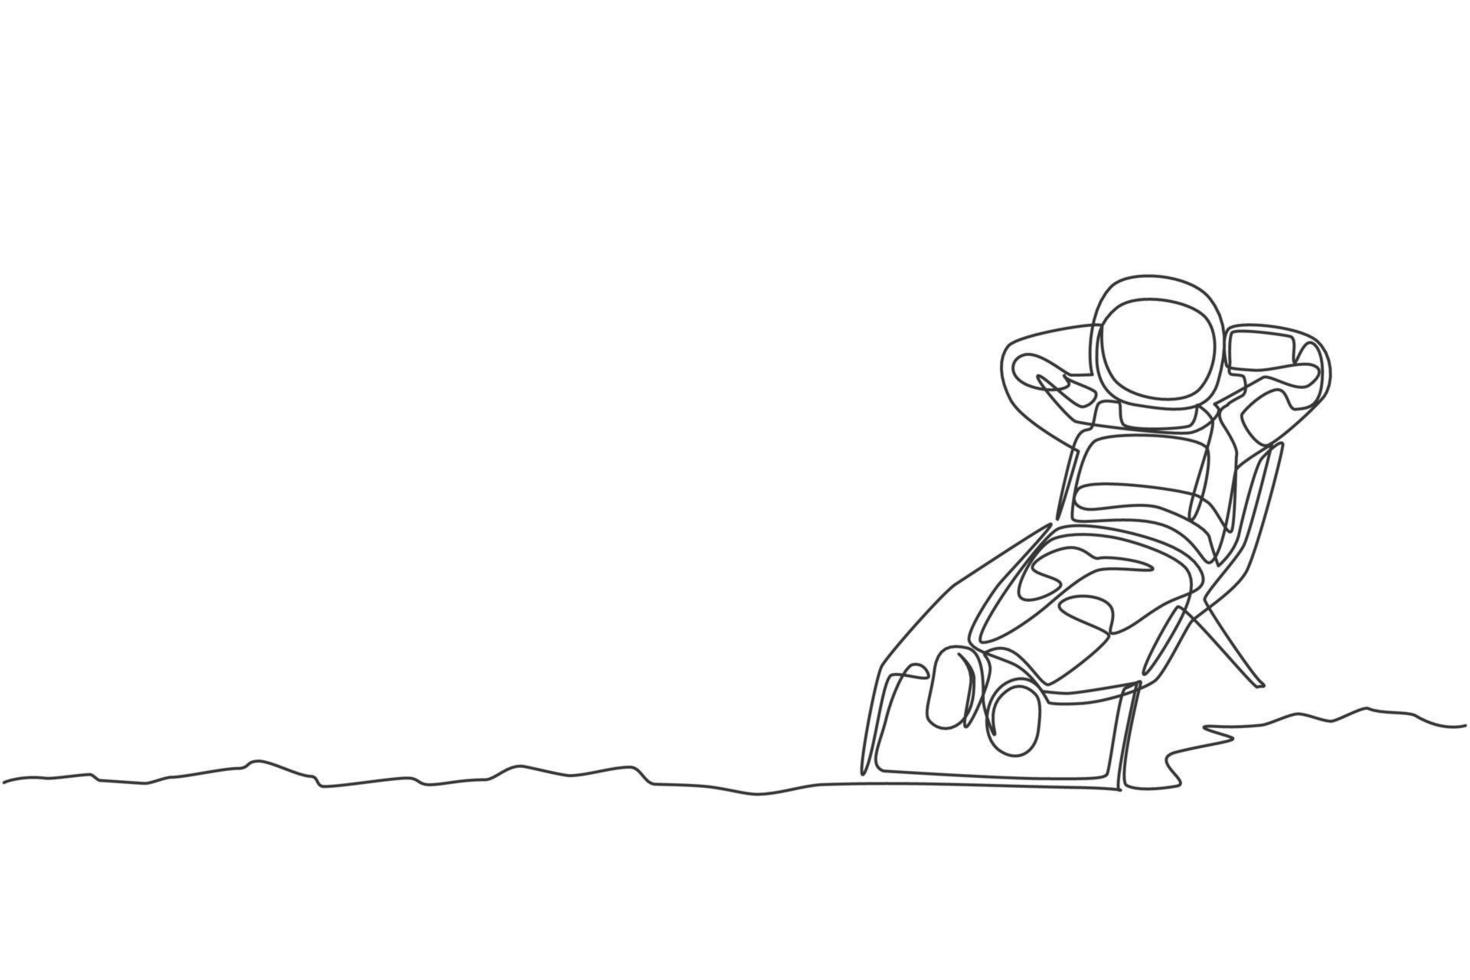 dibujo de una sola línea continua de un joven astronauta que se broncea y duerme una siesta en el sol por más tiempo en la superficie de la luna. concepto de galaxia cósmica del hombre del espacio. Ilustración de vector de diseño de dibujo de una línea de moda